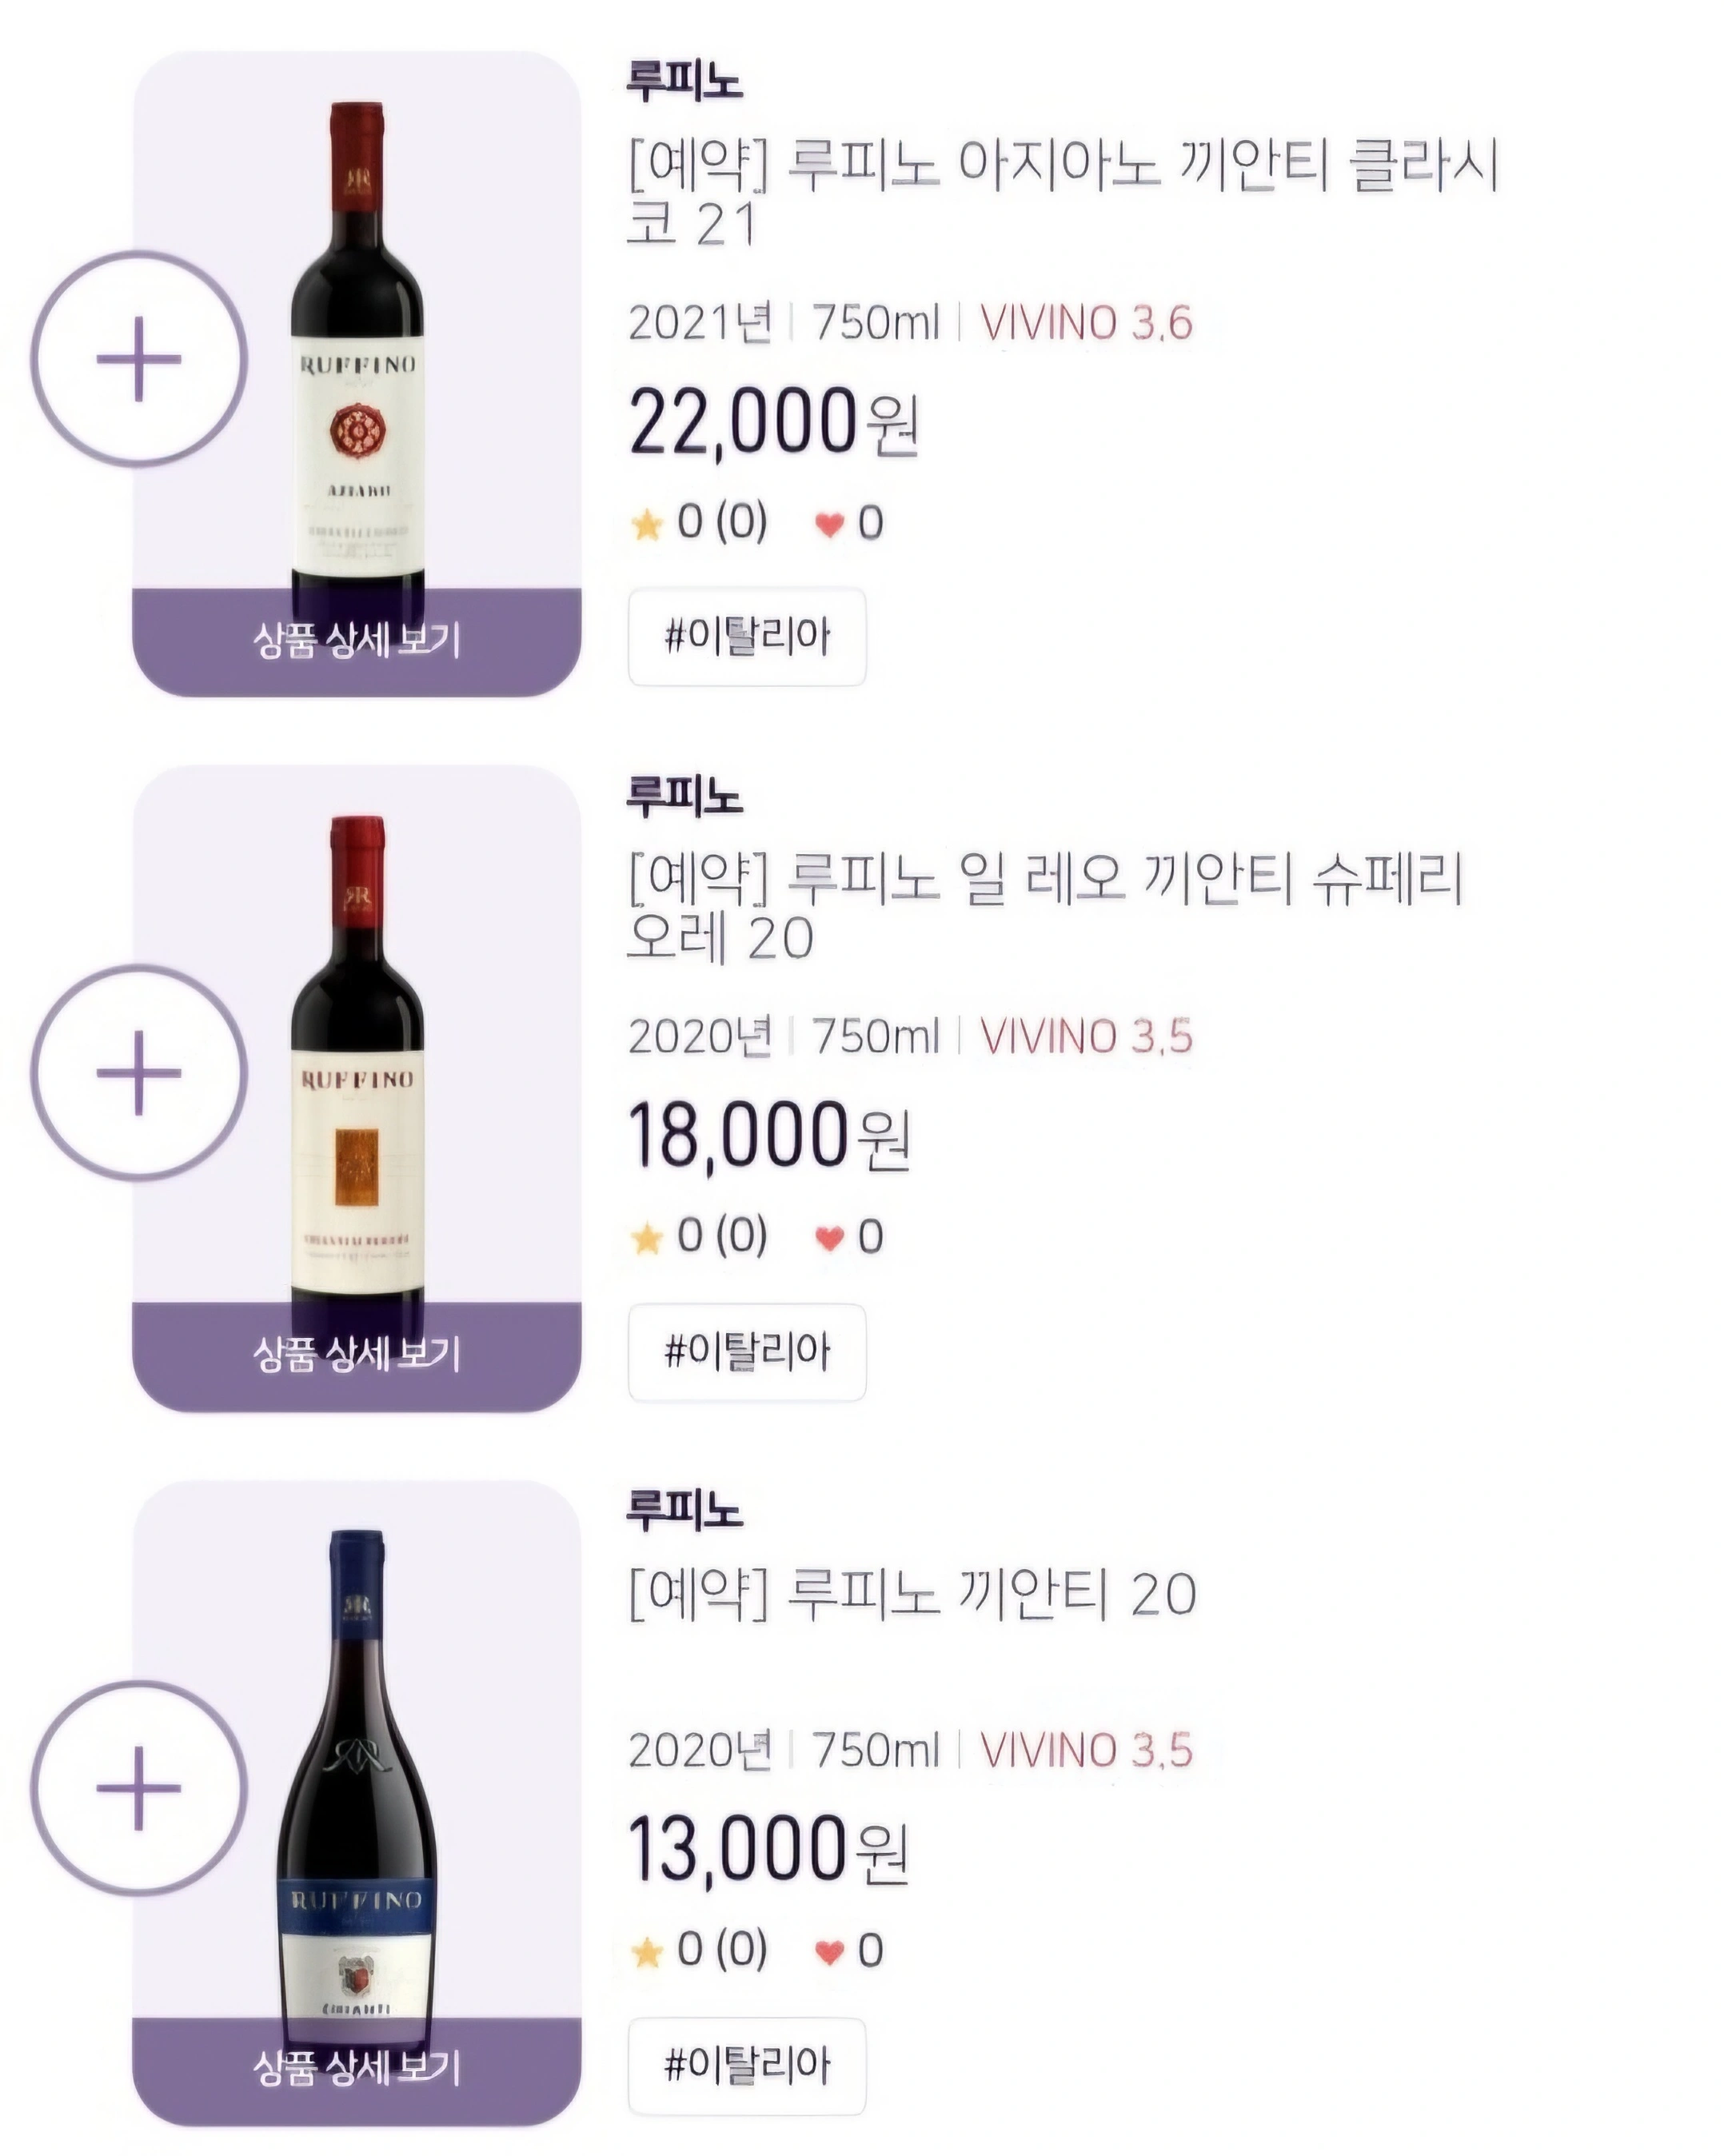 1KMWINE X NARA CELLAR 루피노 와인 파격특가 할인 품목2